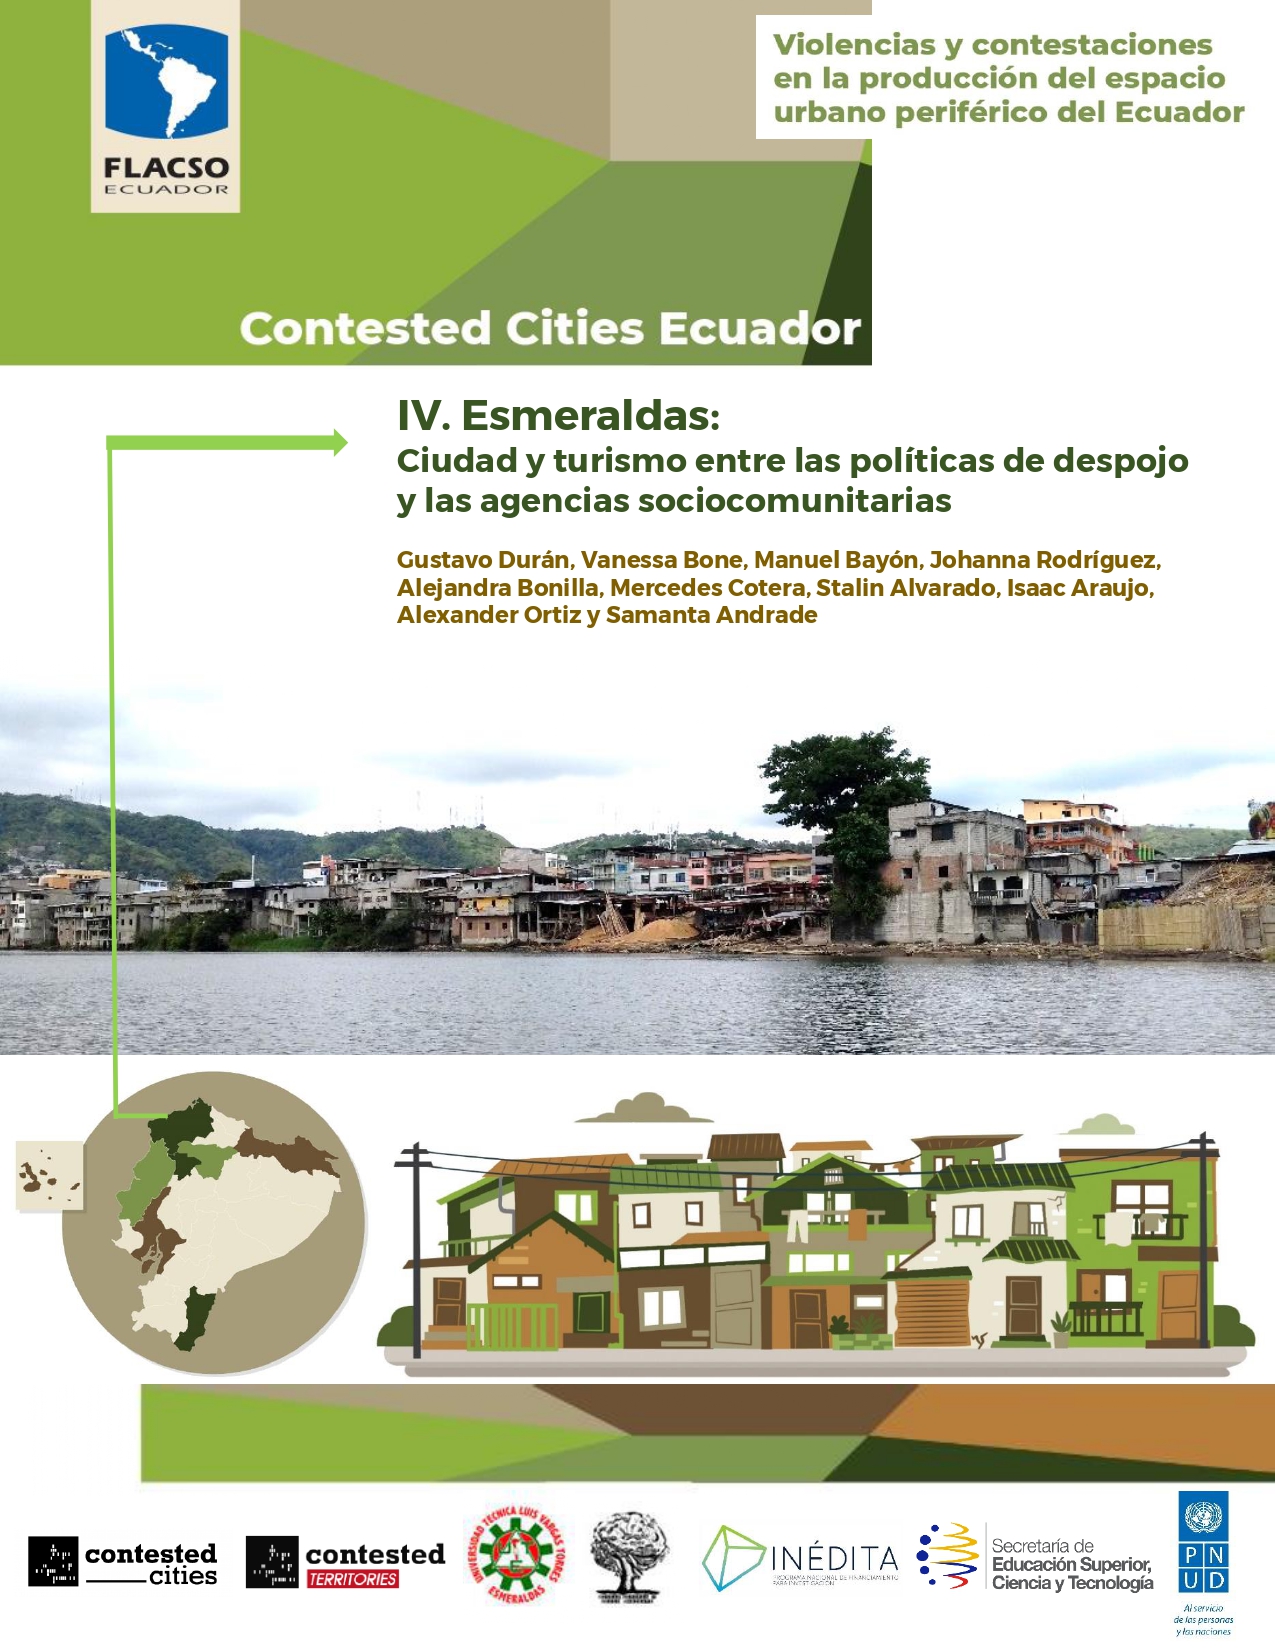 Durán, Gustavo <br>IV. Esmeraldas: Ciudad y turismo entre las políticas de despojo y las agencias sociocomunitarias<br/>Quito, Ecuador: FLACSO Ecuador. 2020. 37 páginas 